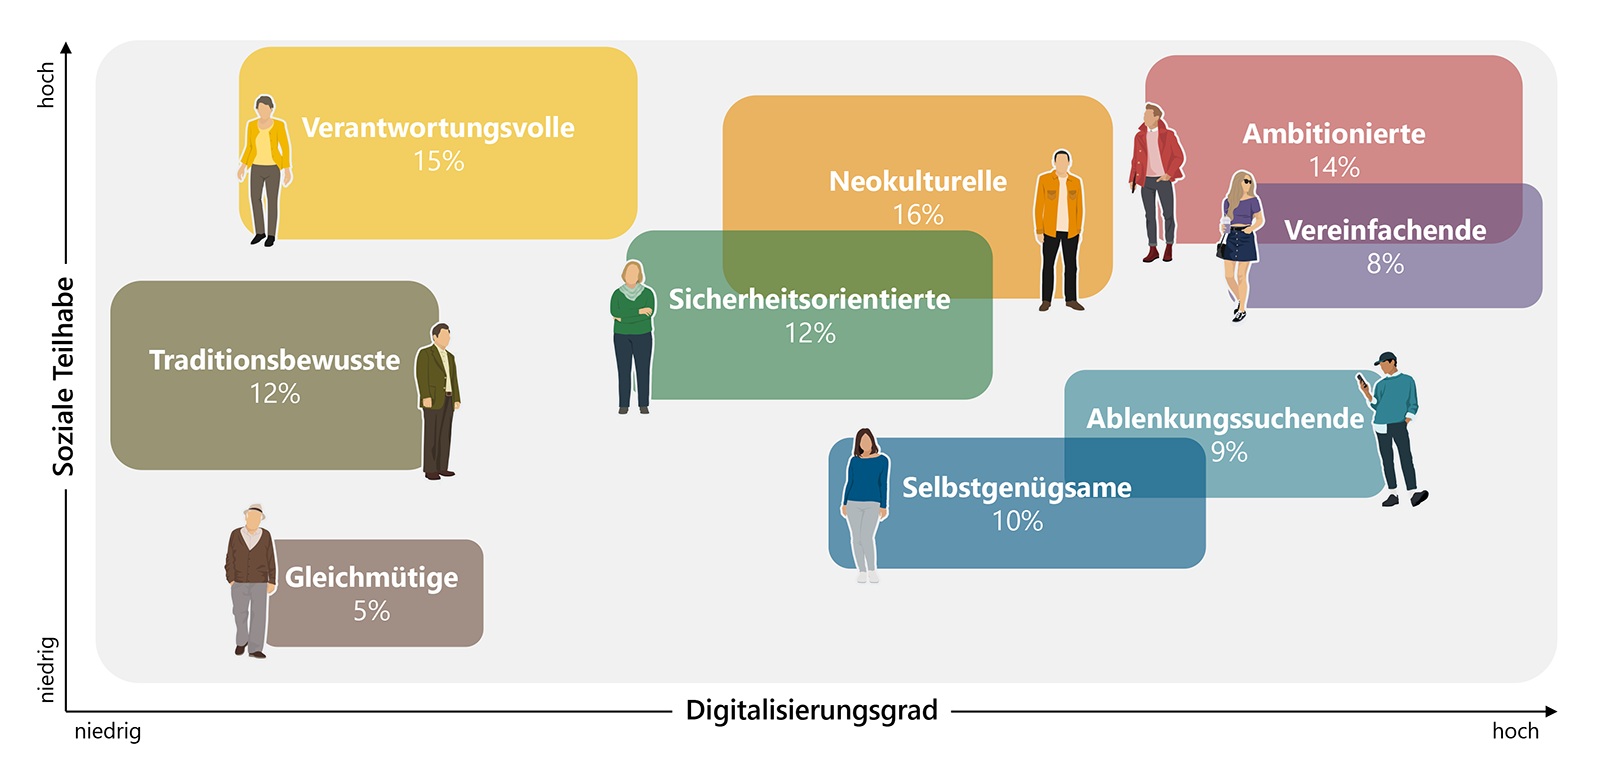 Grafik mit zwei Achsen zu den verschiedenen Mediennutzungstypen in Deutschland. Sie werden nach der sozialen Teilhabe und dem Digitalisierungsgrad differenziert.